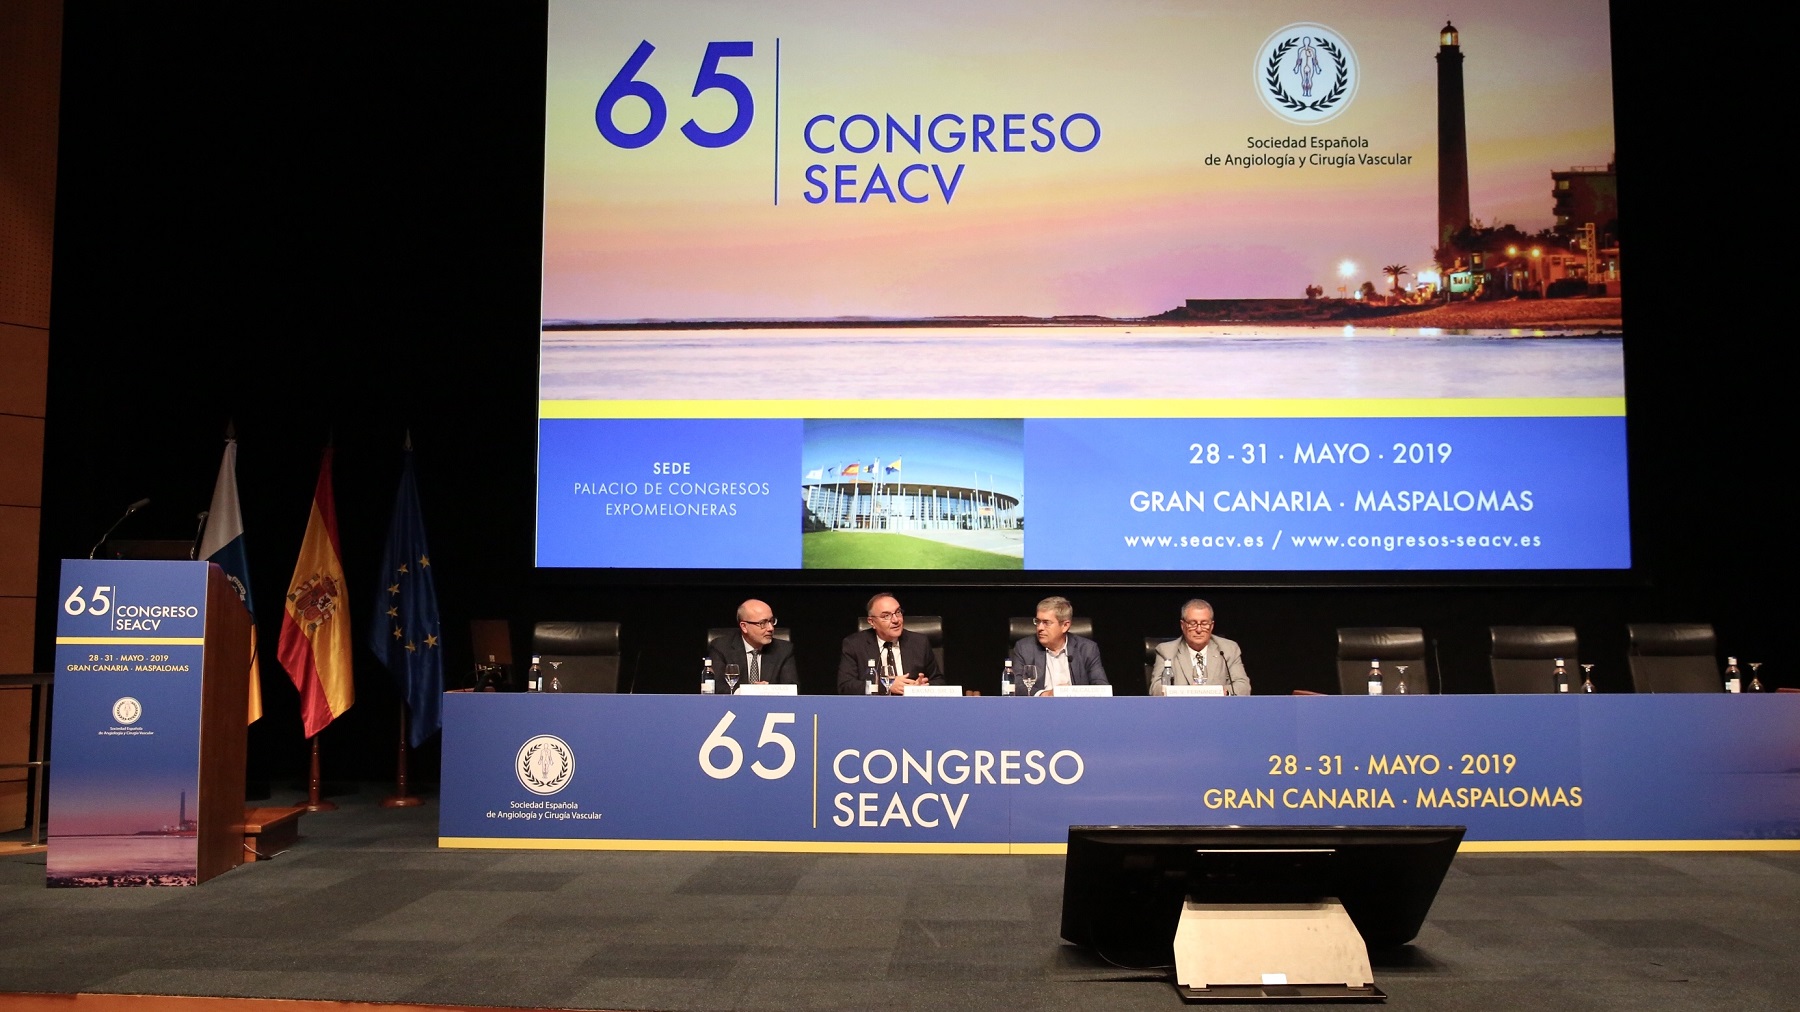 Inauguración del Congreso Nacional de la Sociedad Española de Angiología y Cirugía Vascular